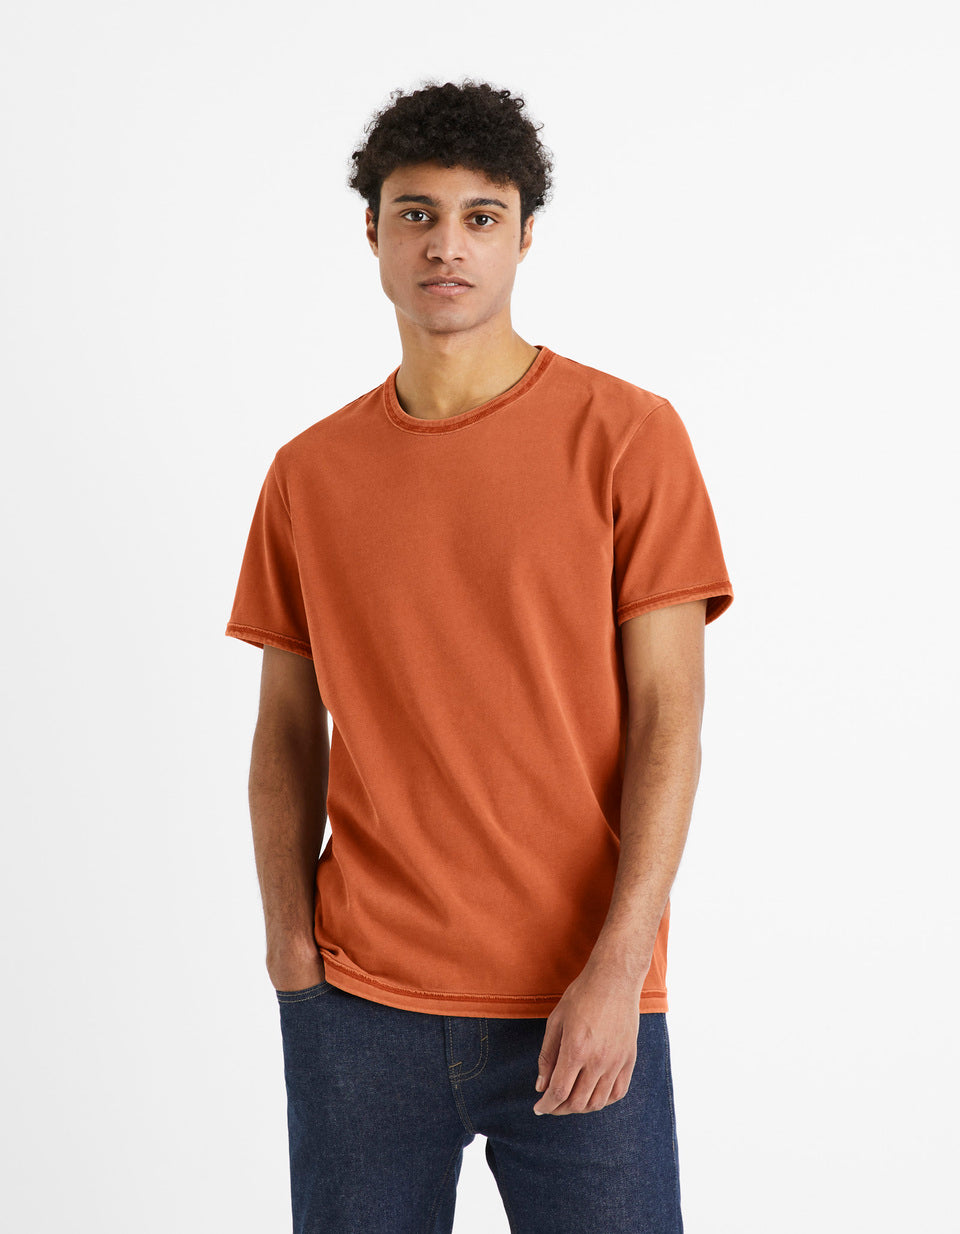 T-Shirt Turtleneck Around 100% Cotton - Terracotta - 02